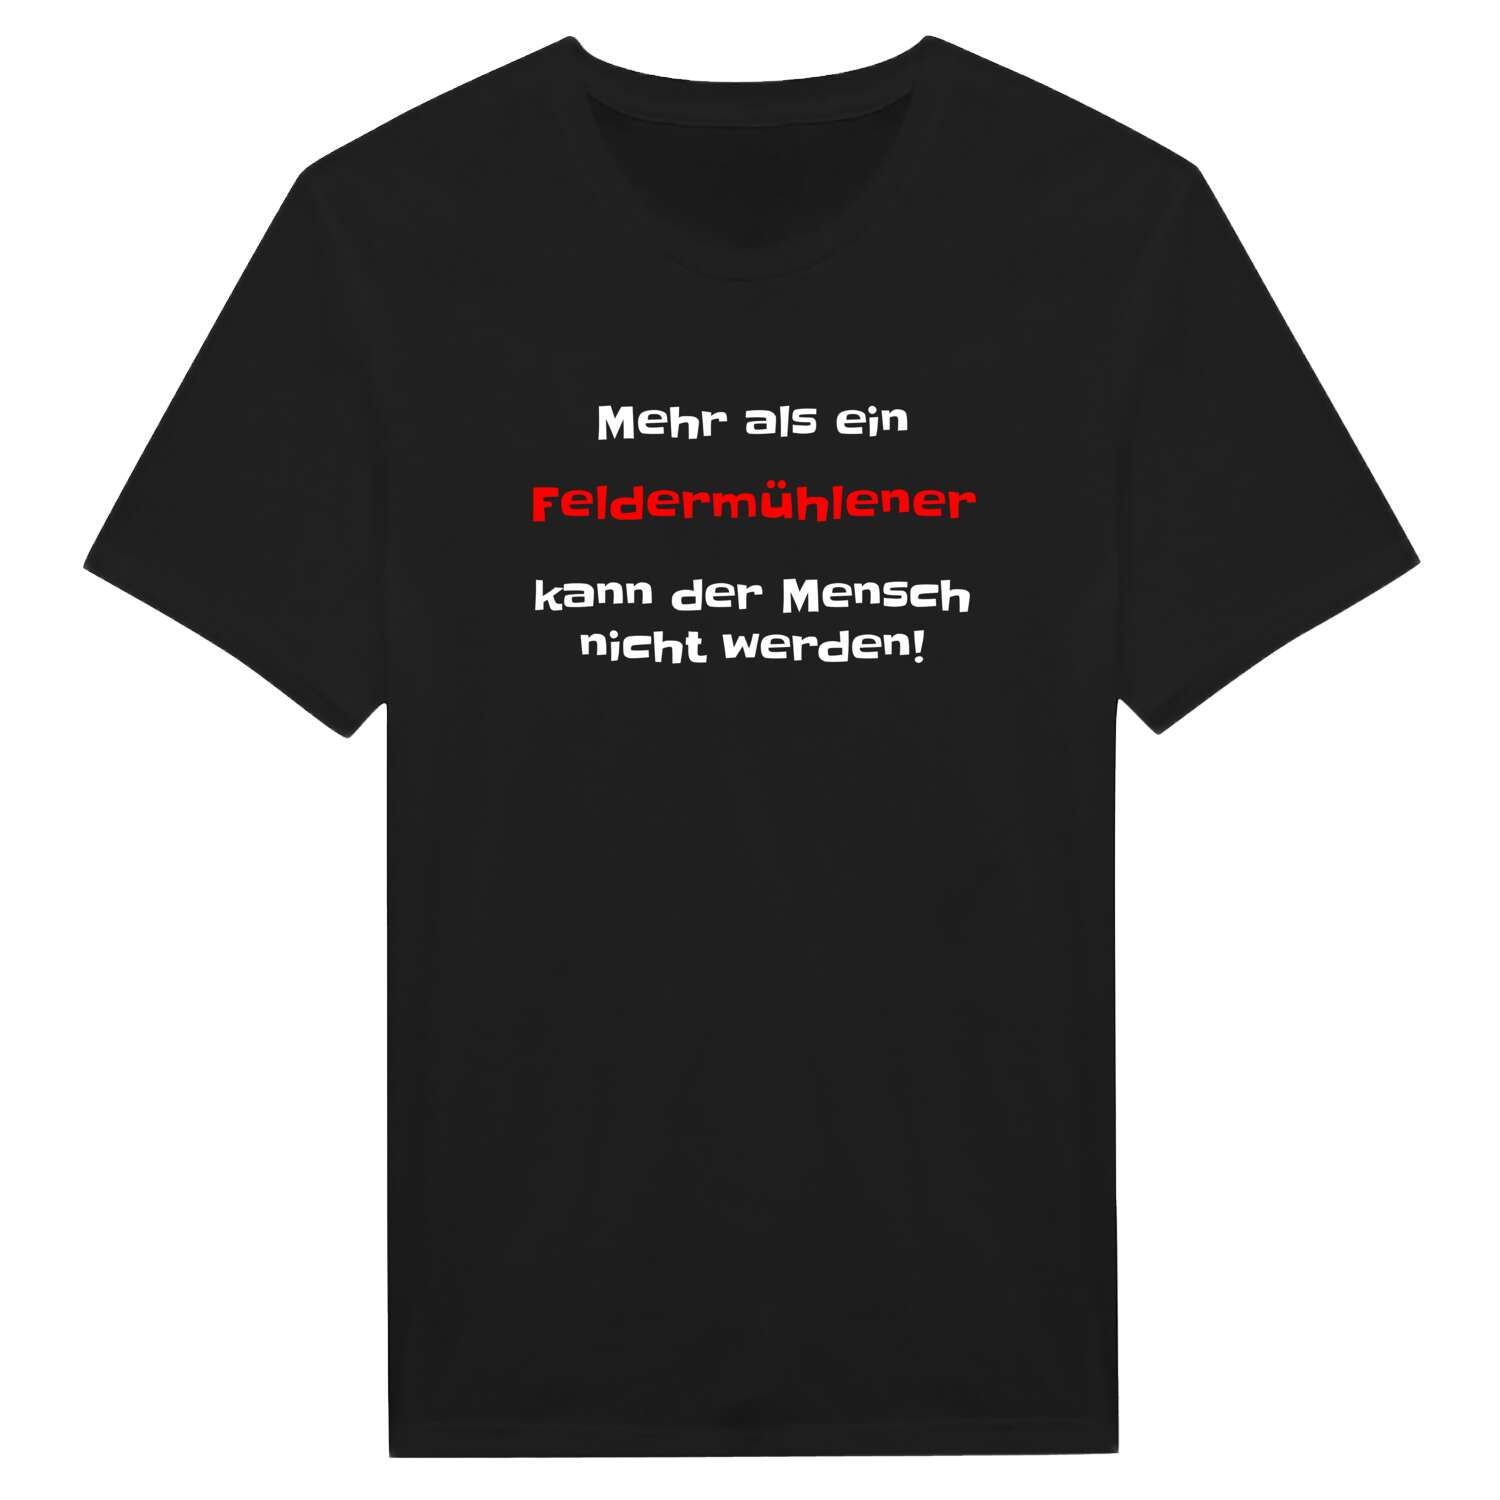 Feldermühle T-Shirt »Mehr als ein«